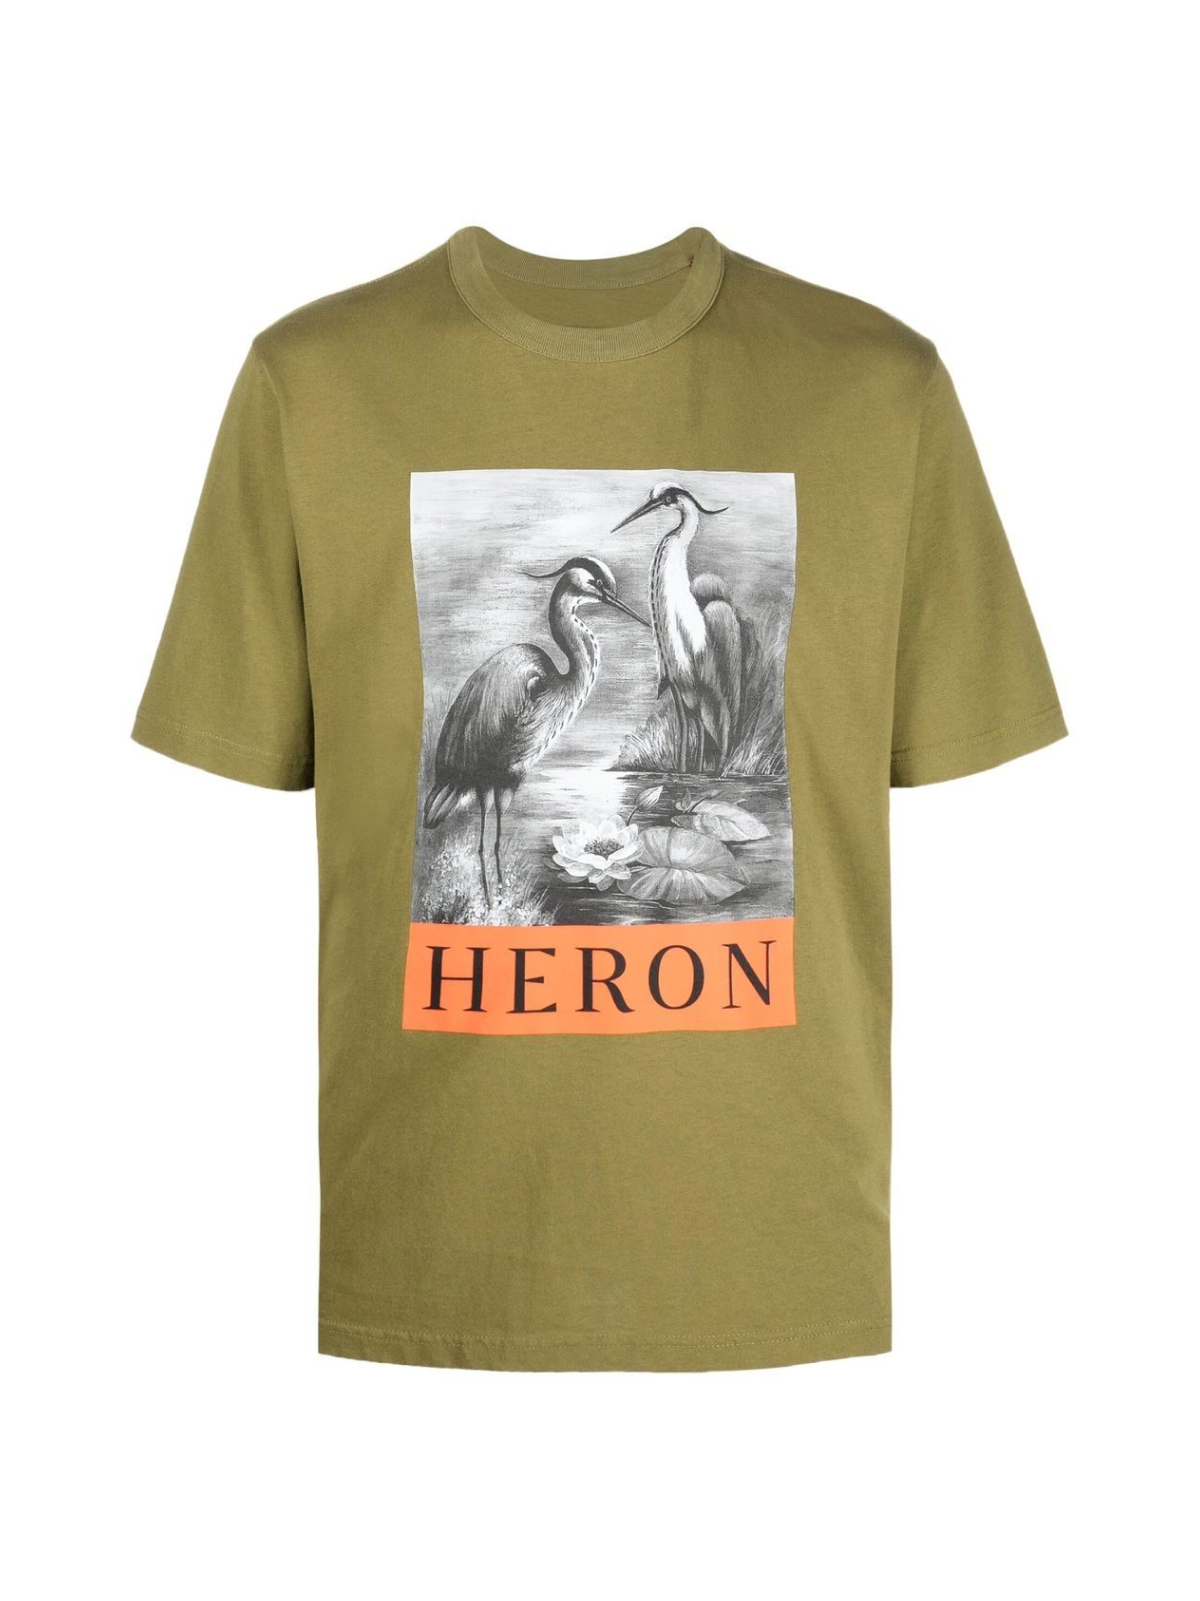 Heron BW Logo T-Shirt